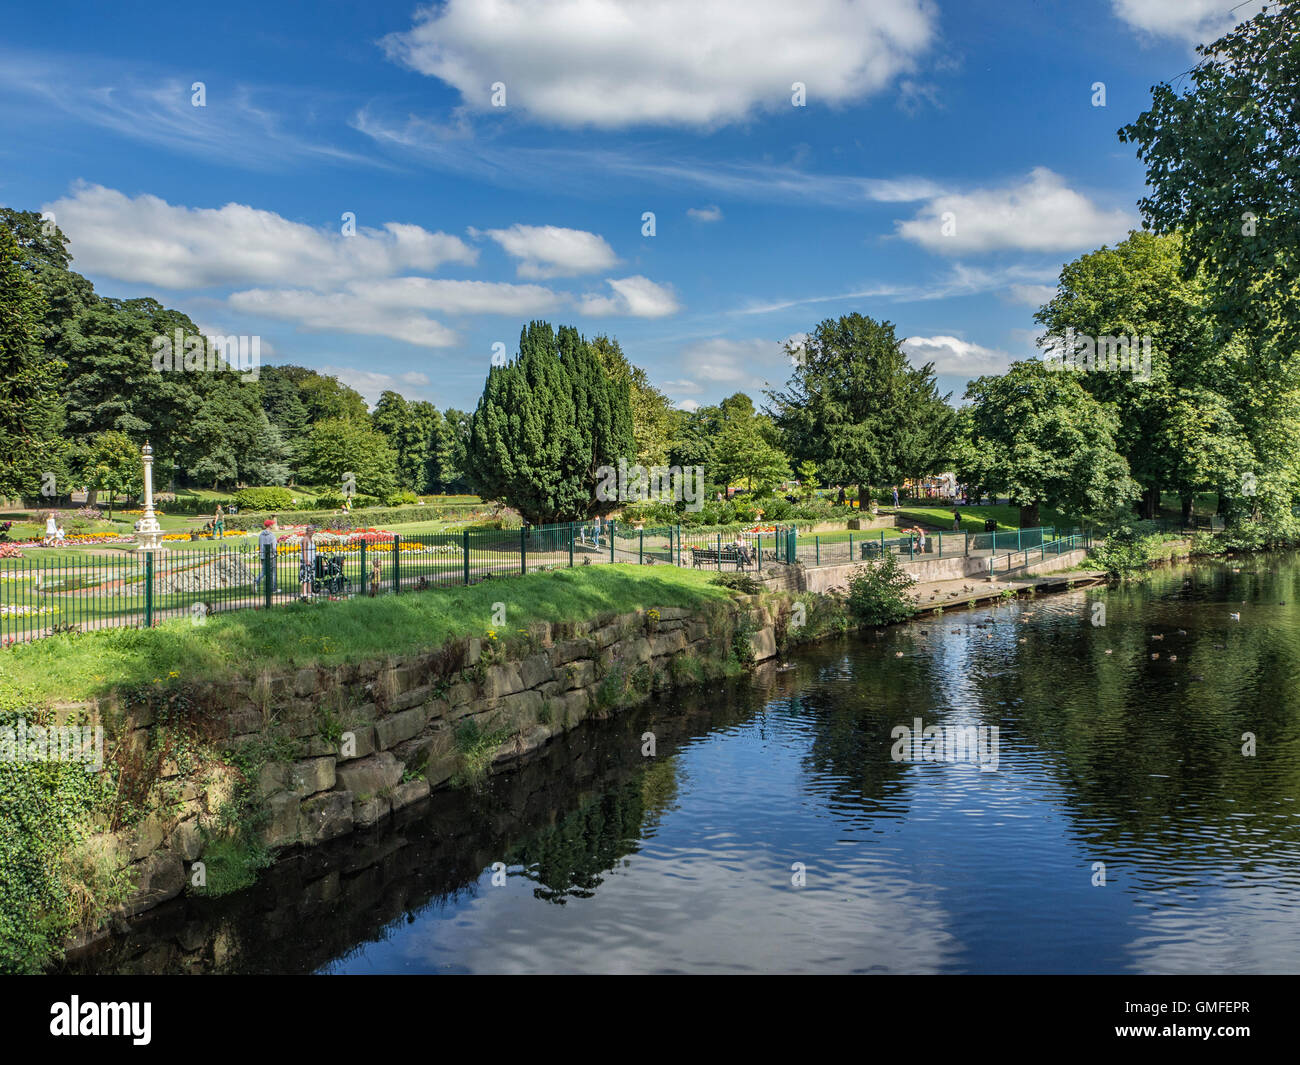 Congleton Park, Congleton, Cheshire, England, UK Stock Photo